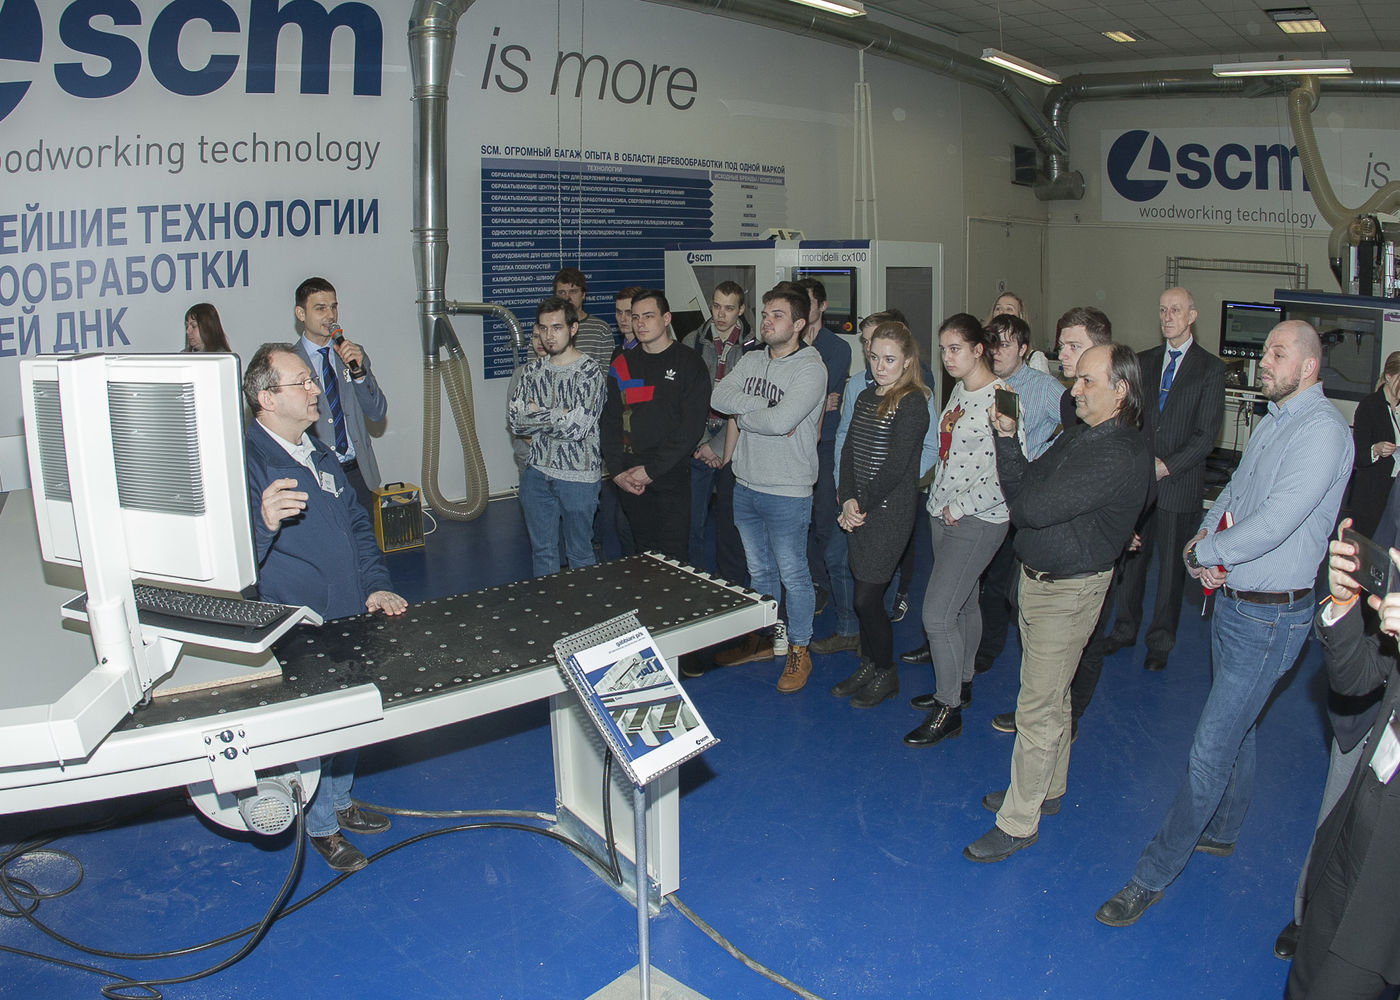 Технологический центр SCM: обновлённая экспозиция и демонстрация работы с системой БАЗИС 